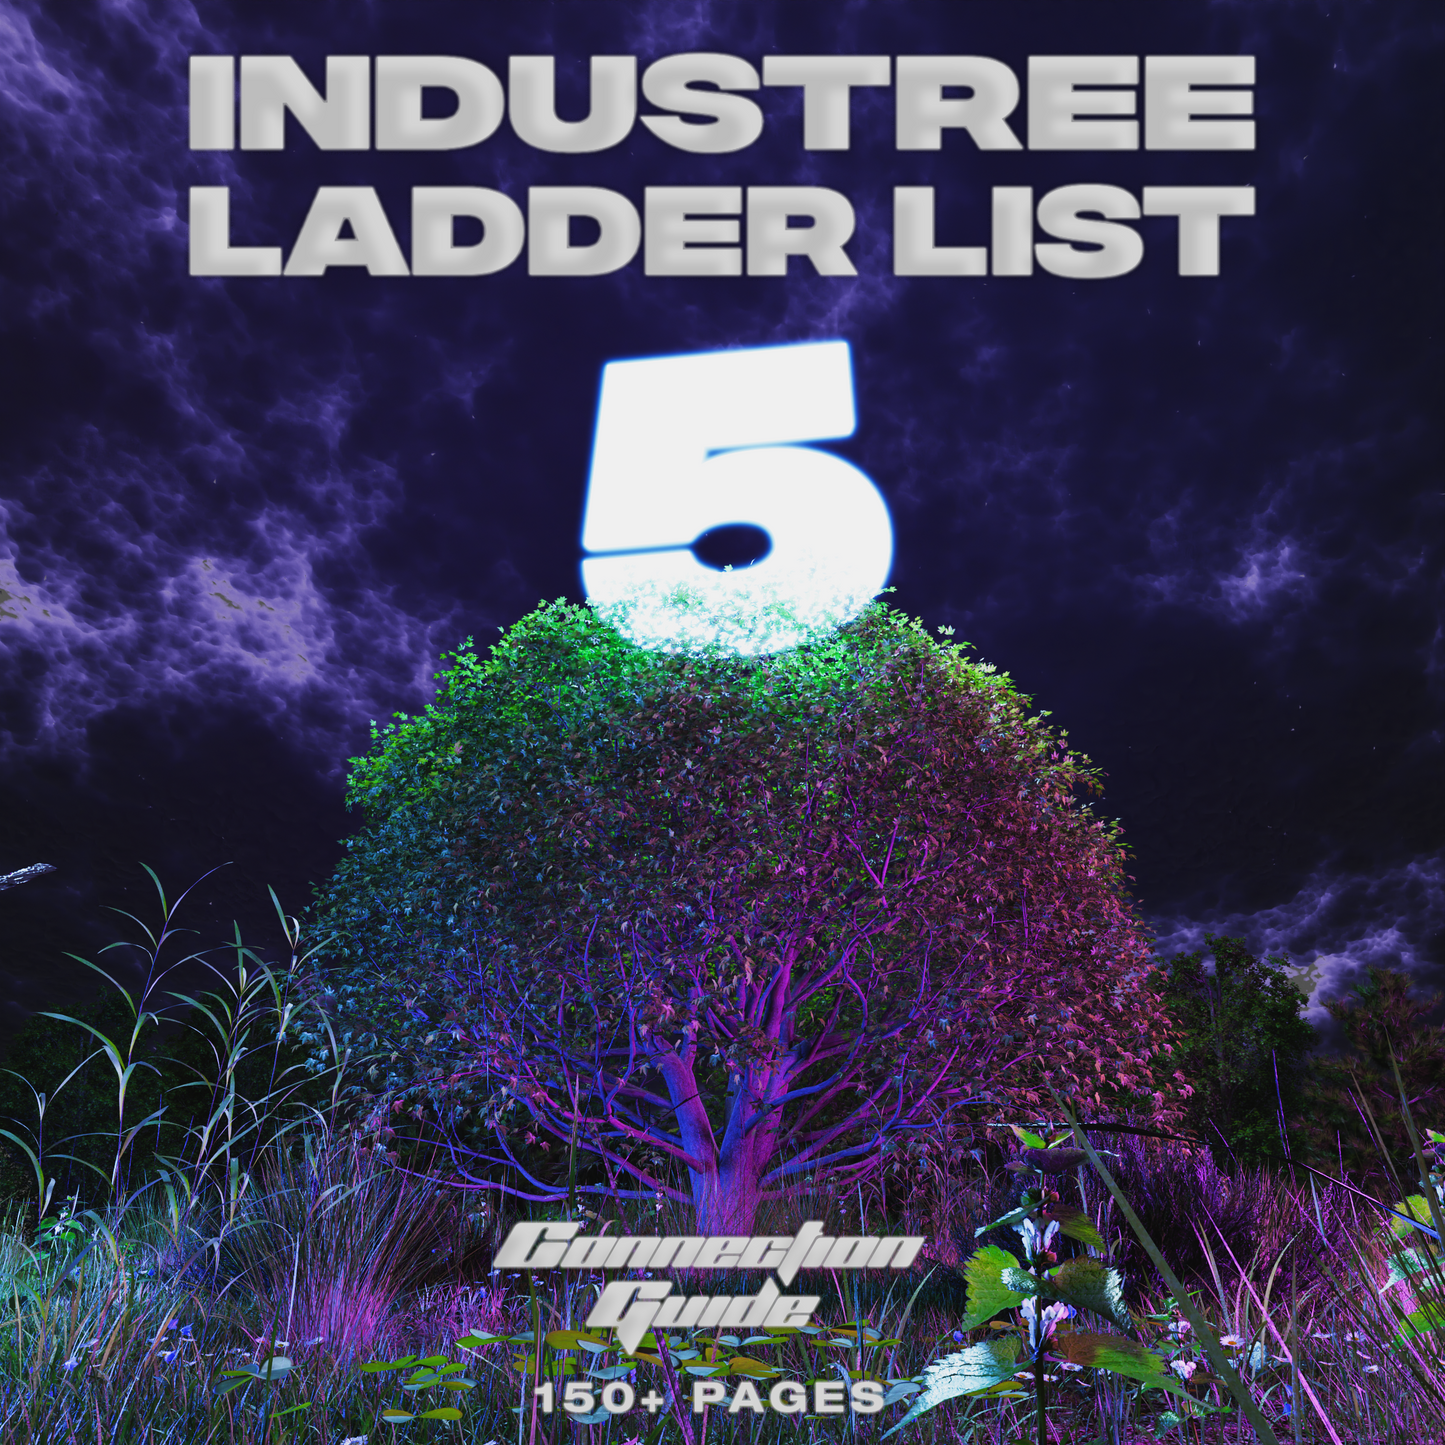 Ladder List 5 (INDUSTREE)